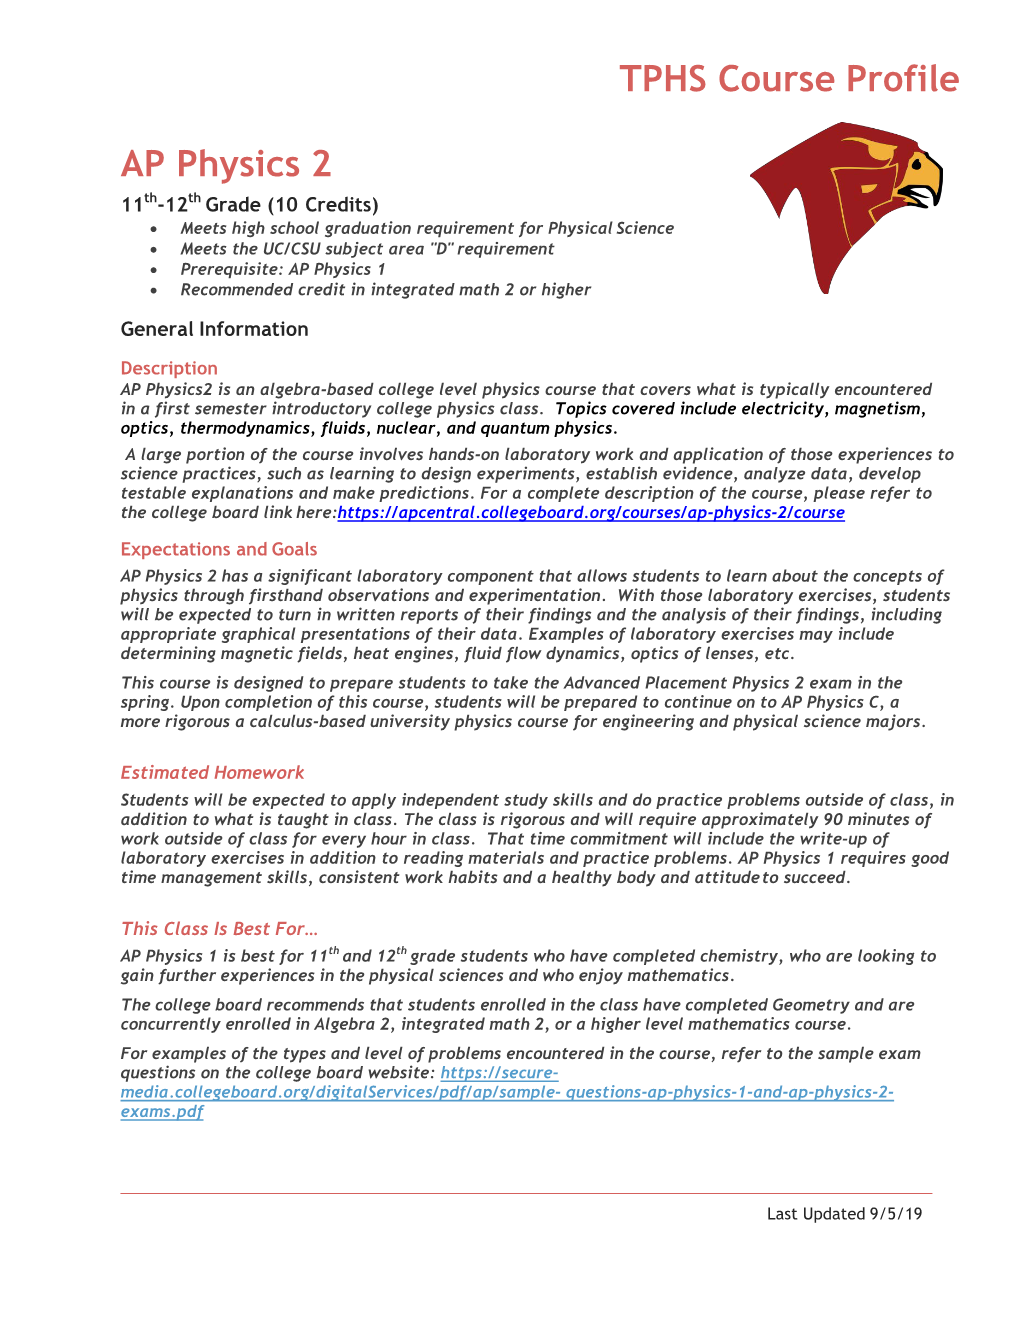 TPHS Course Profile AP Physics 2